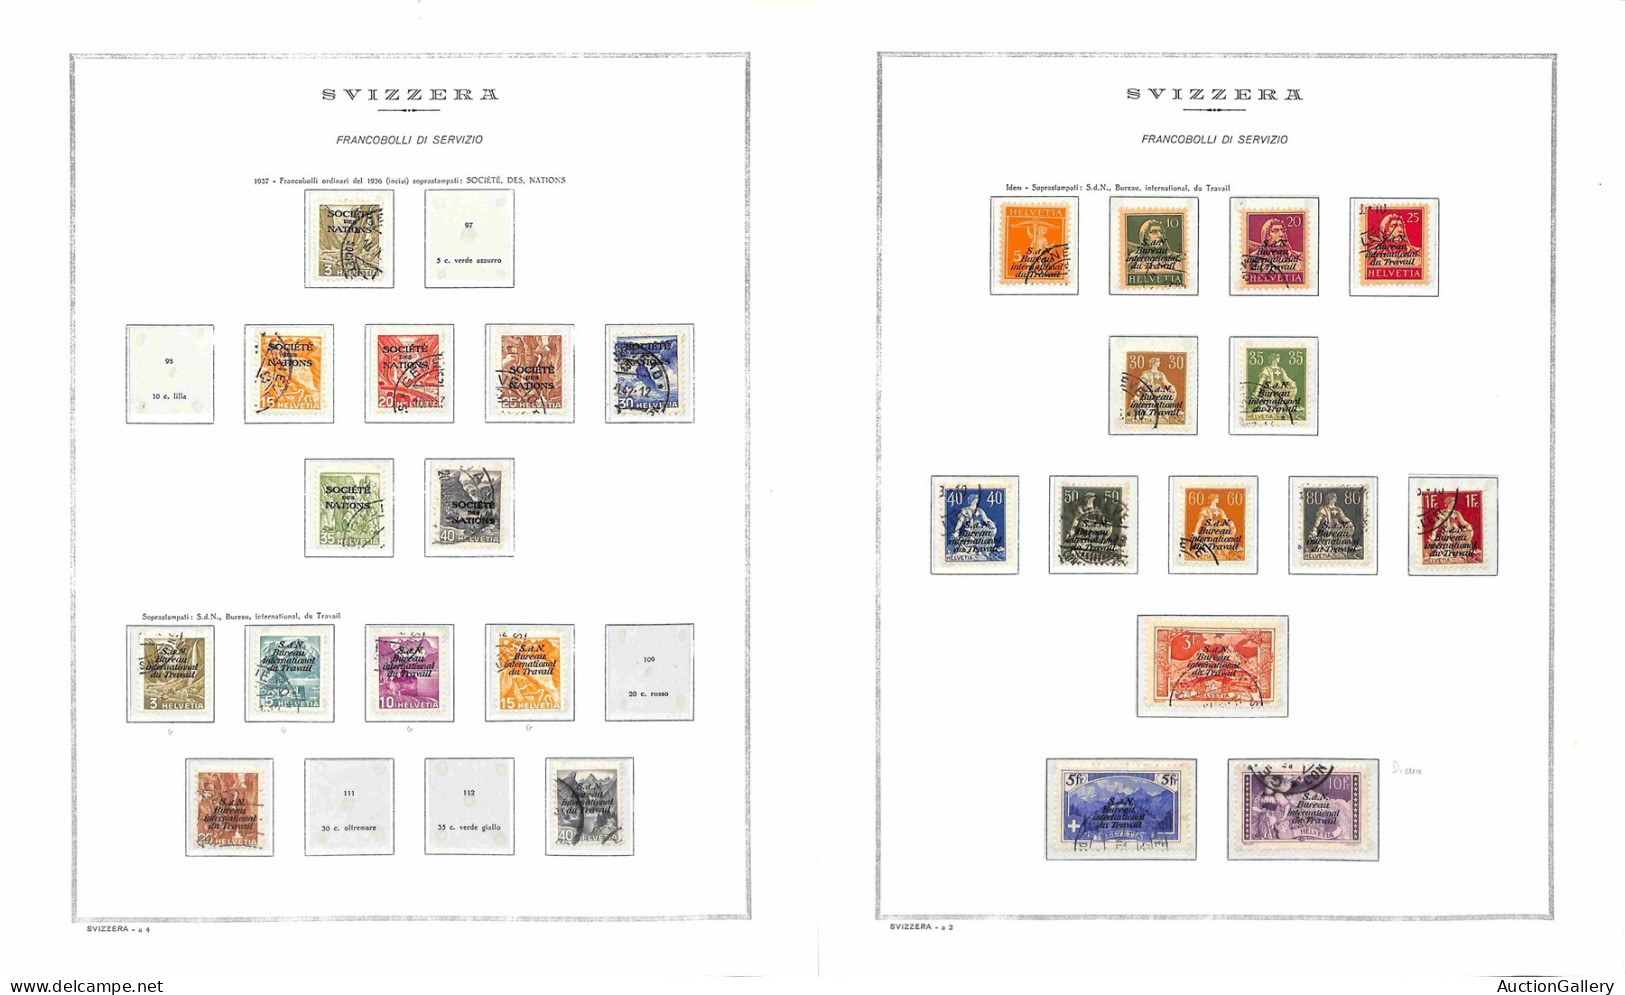 Lotti e Collezioni - Europa e Oltremare - SVIZZERA - 1920/1989 - Francobolli di Servizio - Collezione avanzata di valori